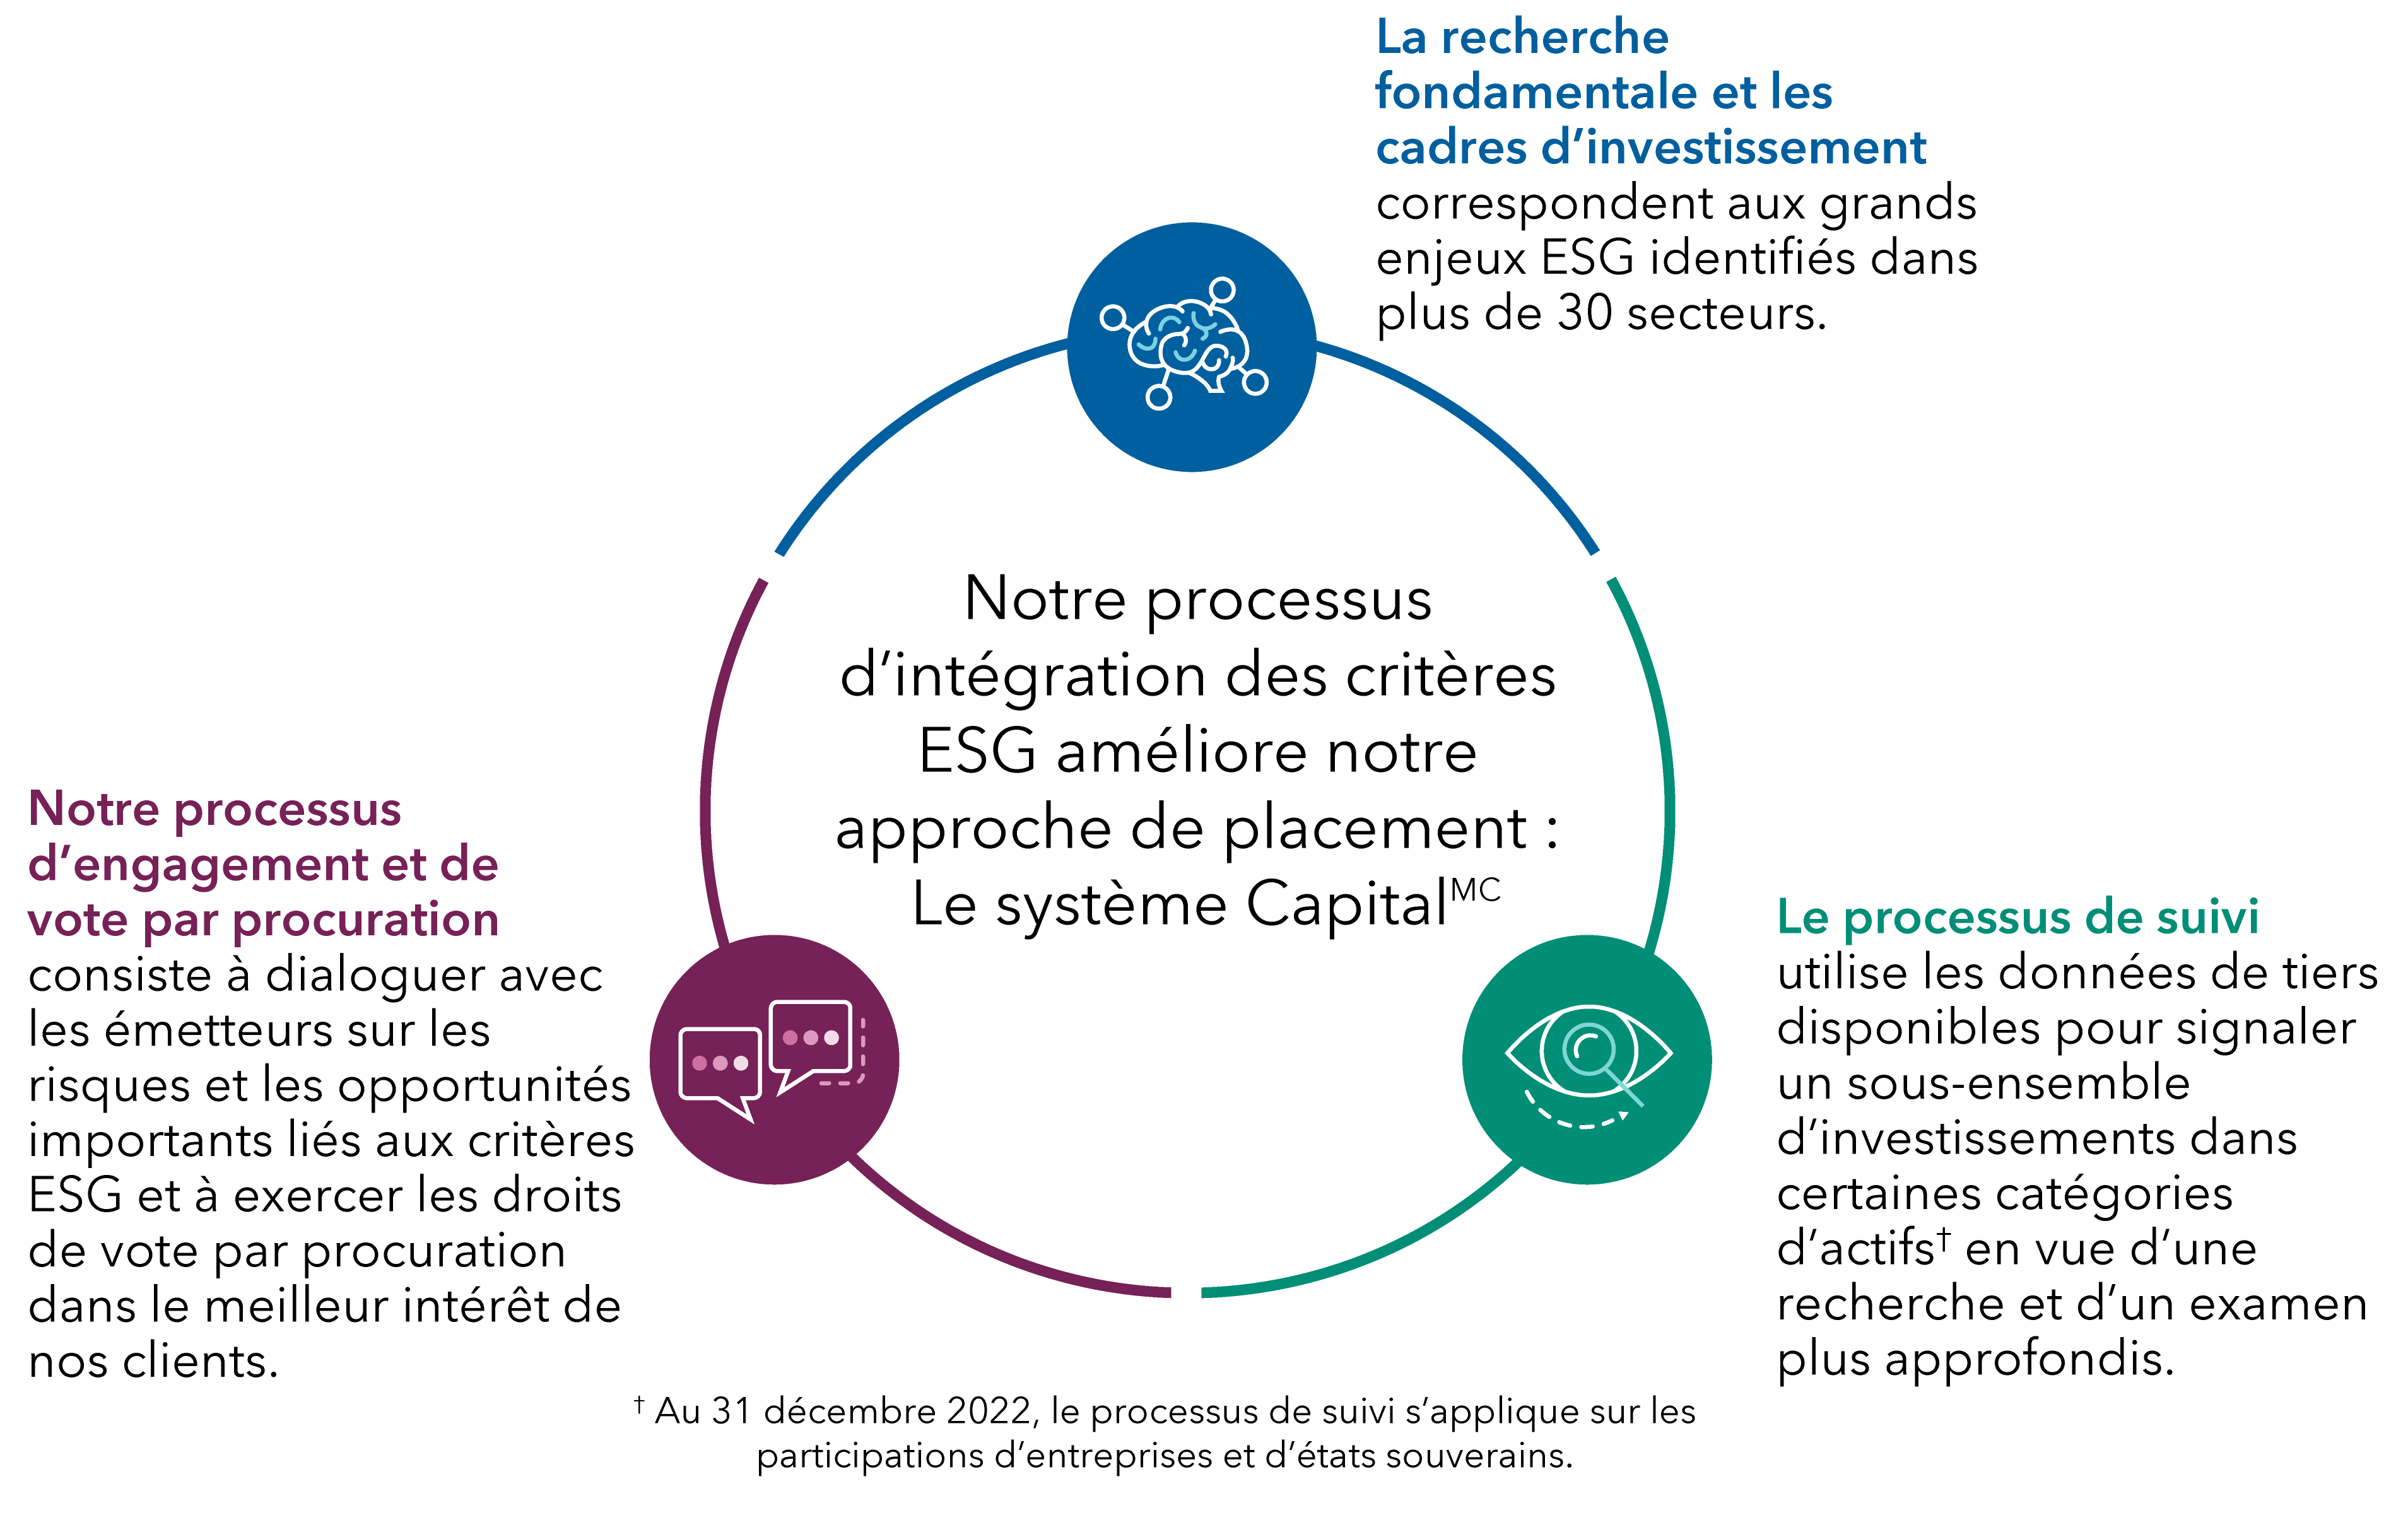 Cette roue illustre l’approche liée aux critères ESG de Capital Group, qui comporte trois composantes étroitement intégrées : des cadres d’investissement, un processus de suivi, ainsi que l’engagement et le vote par procuration. Notre intégration des critères ESG renforce notre recherche et notre analyse ascendantes. Nos cadres d’investissement reflètent notre point de vue sur les questions ESG importantes, secteur par secteur. Notre processus de suivi sélectionne un sous-ensemble d’investissements, en fonction de la disponibilité des données, qui exigent un niveau élevé de recherche et d’examen. Notre engagement et notre vote par procuration constituent un dialogue permanent avec les émetteurs sur les questions ESG afin de les encourager à adopter les meilleures pratiques. 